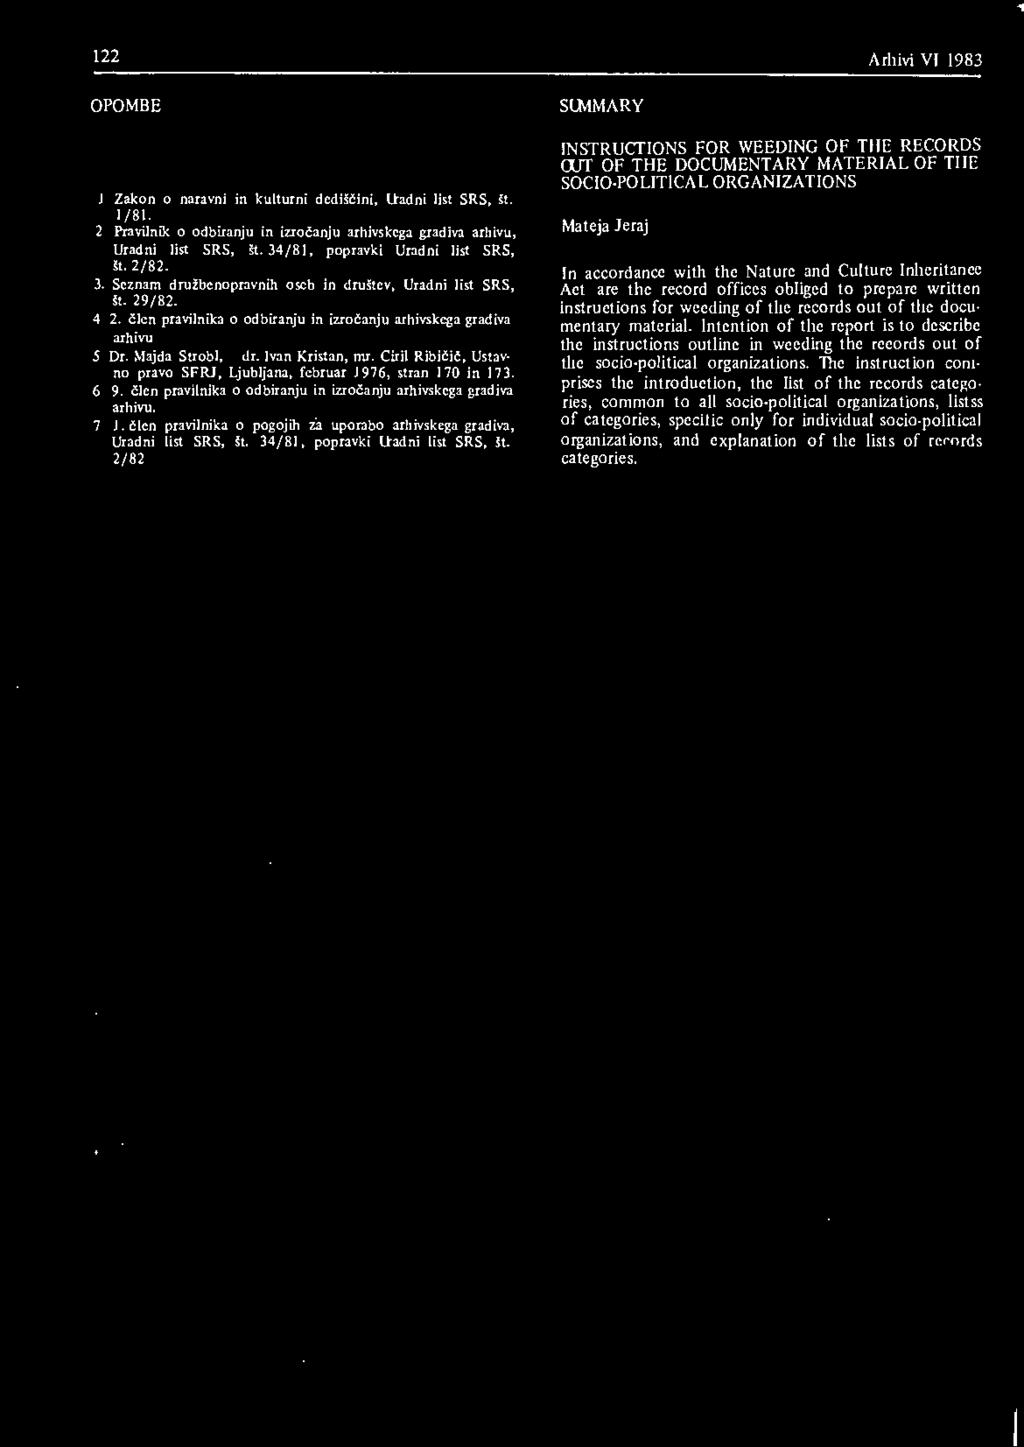 Majda Strobl, dr. Ivan Kristan, mr. Ciril Ribičič, Ustavno pravo SFRJ, Ljubljana, februar 1976, stran 170 in 173. 6 9. člen pravilnika o odbiranju in izročanju arhivskega gradiva arhivu. 7 l.